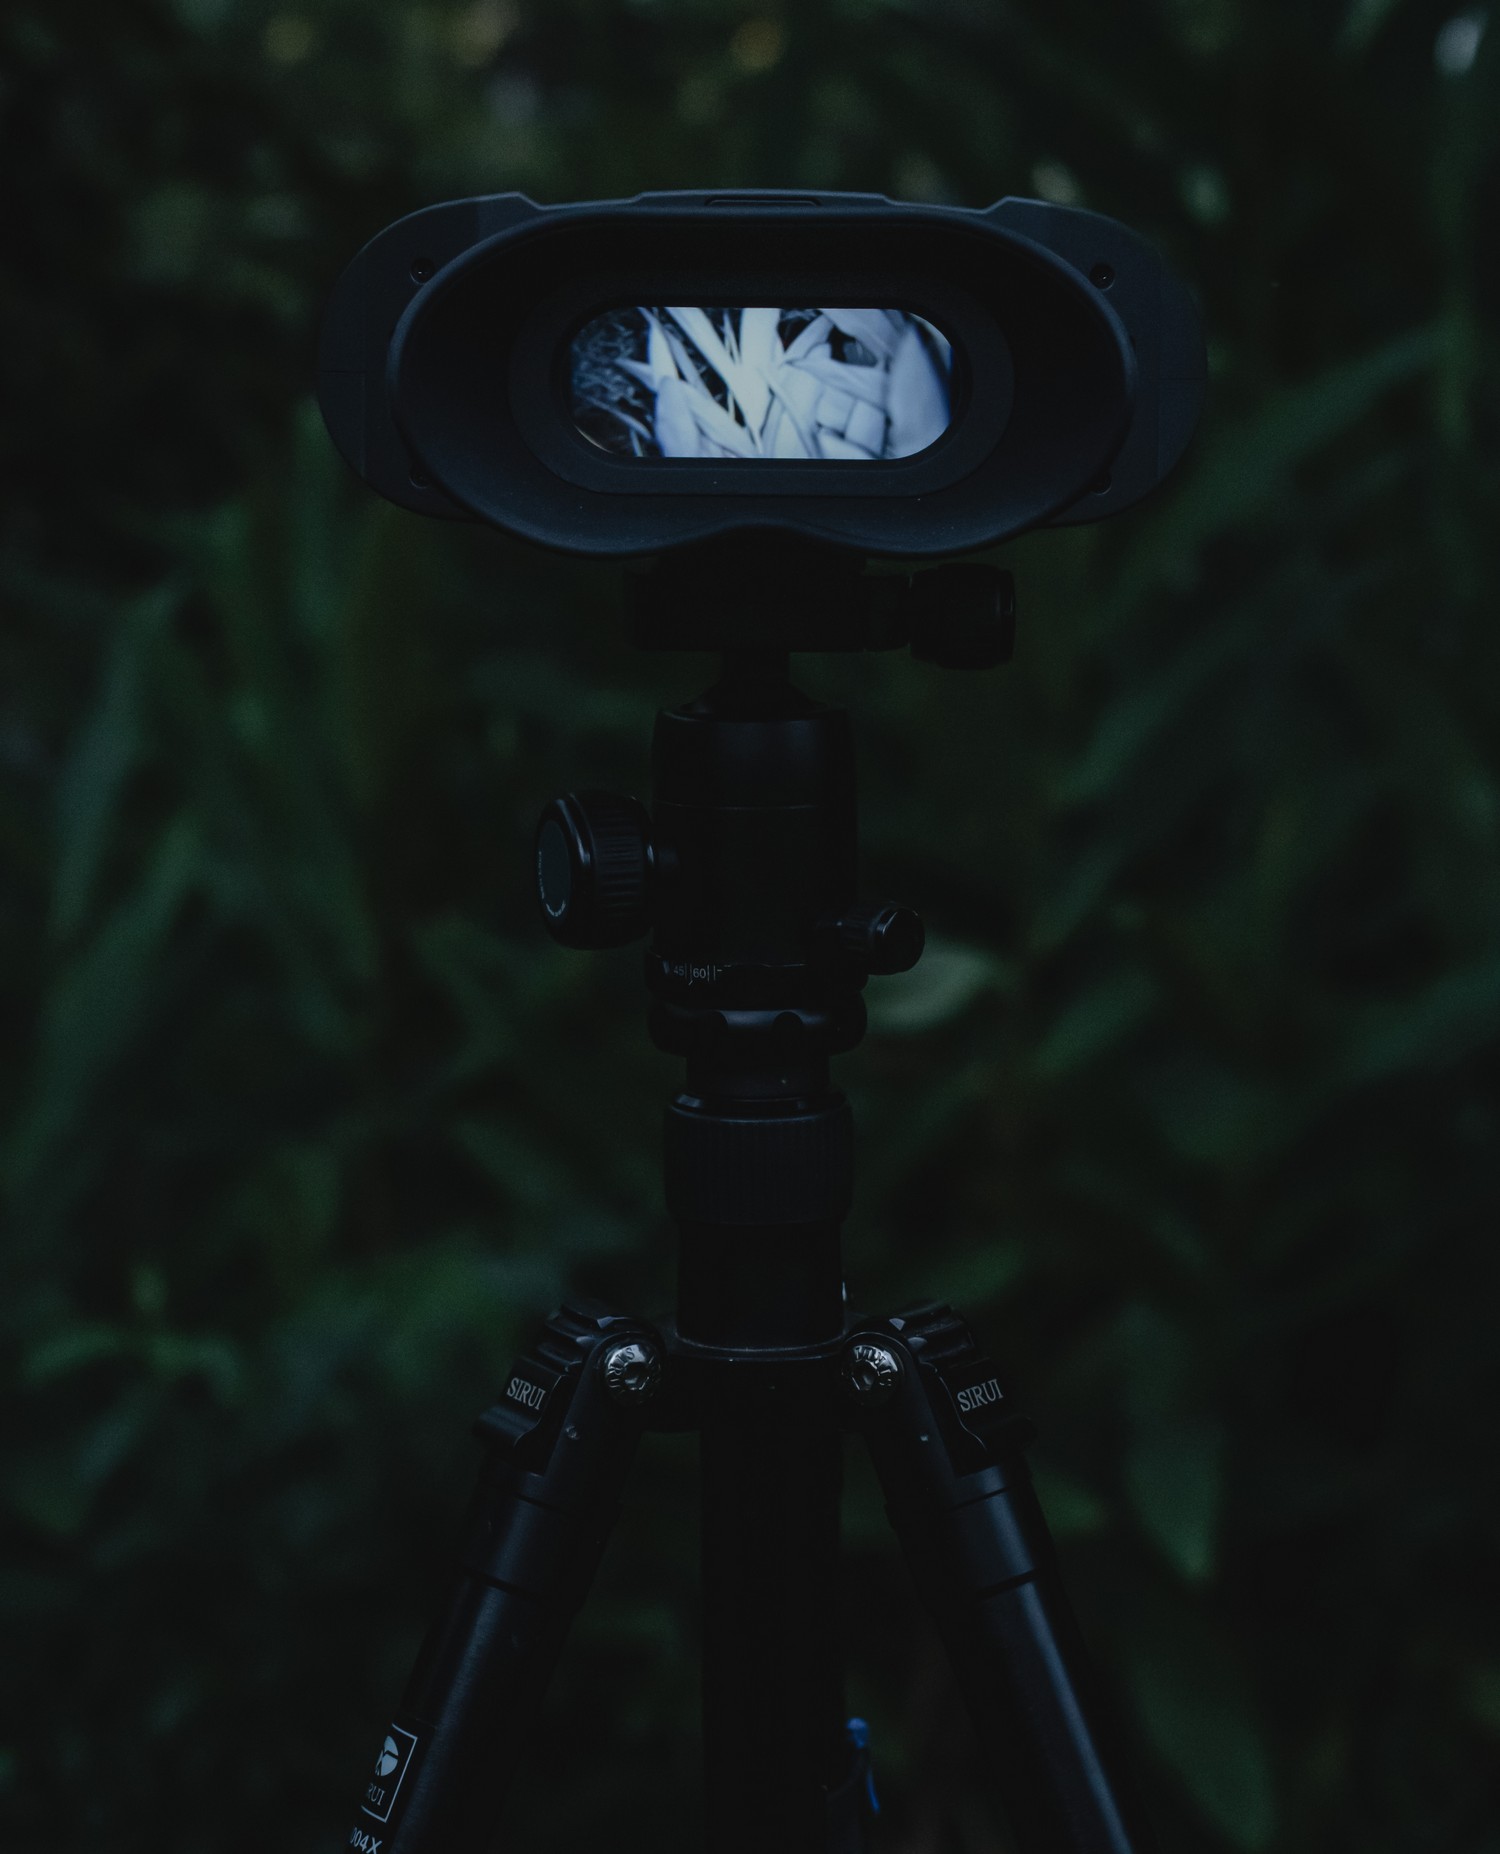 penglihatan malam NVB 200 - Penukaran automatik mod dwi siang dan malam